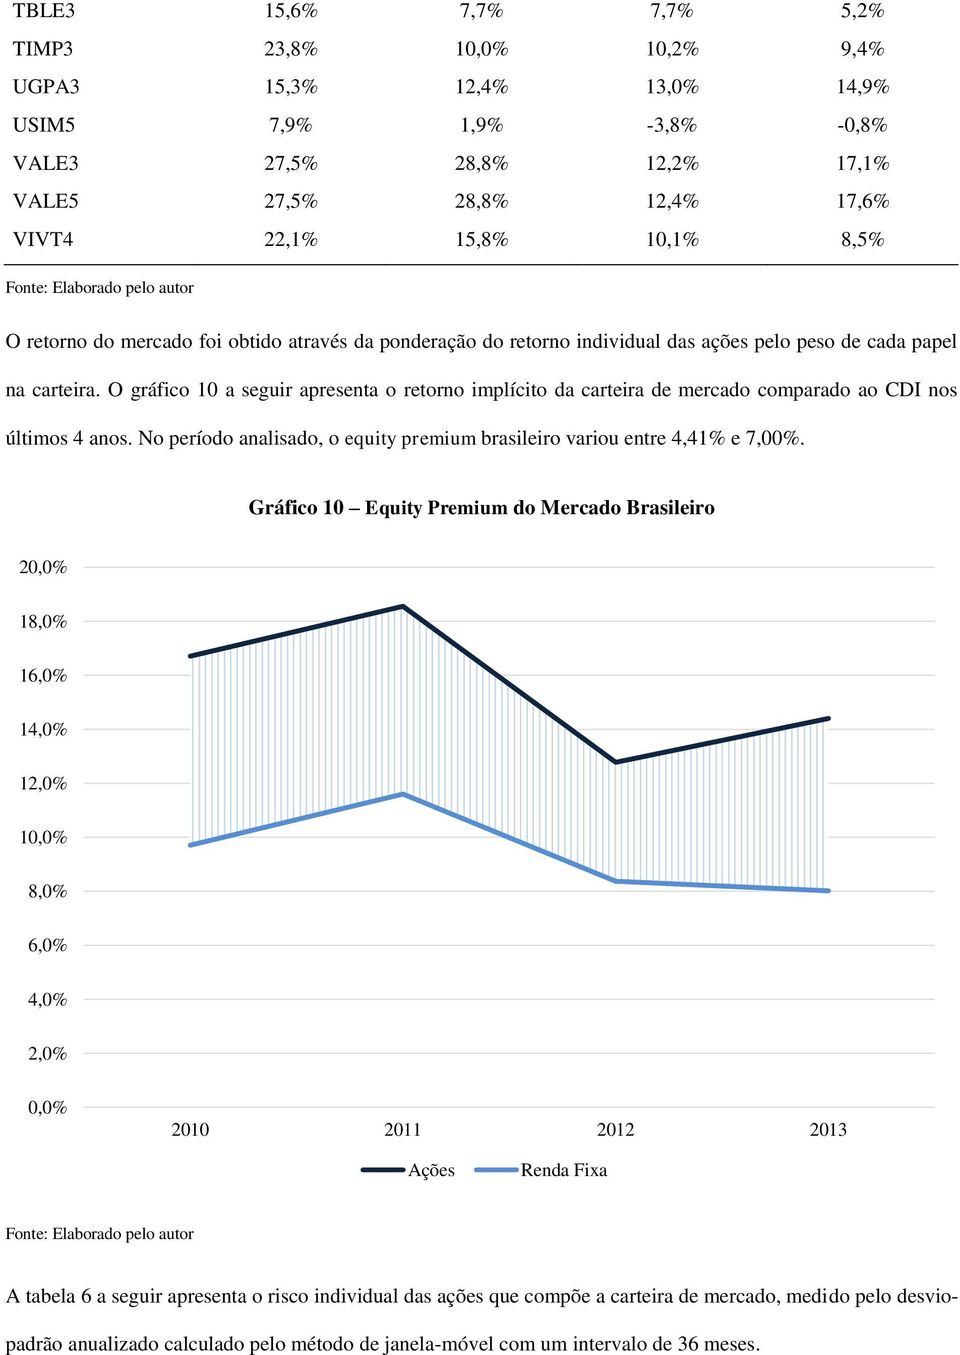 O gráfico 10 a seguir apresenta o retorno implícito da carteira de mercado comparado ao CDI nos últimos 4 anos. No período analisado, o equity premium brasileiro variou entre 4,41% e 7,00%.